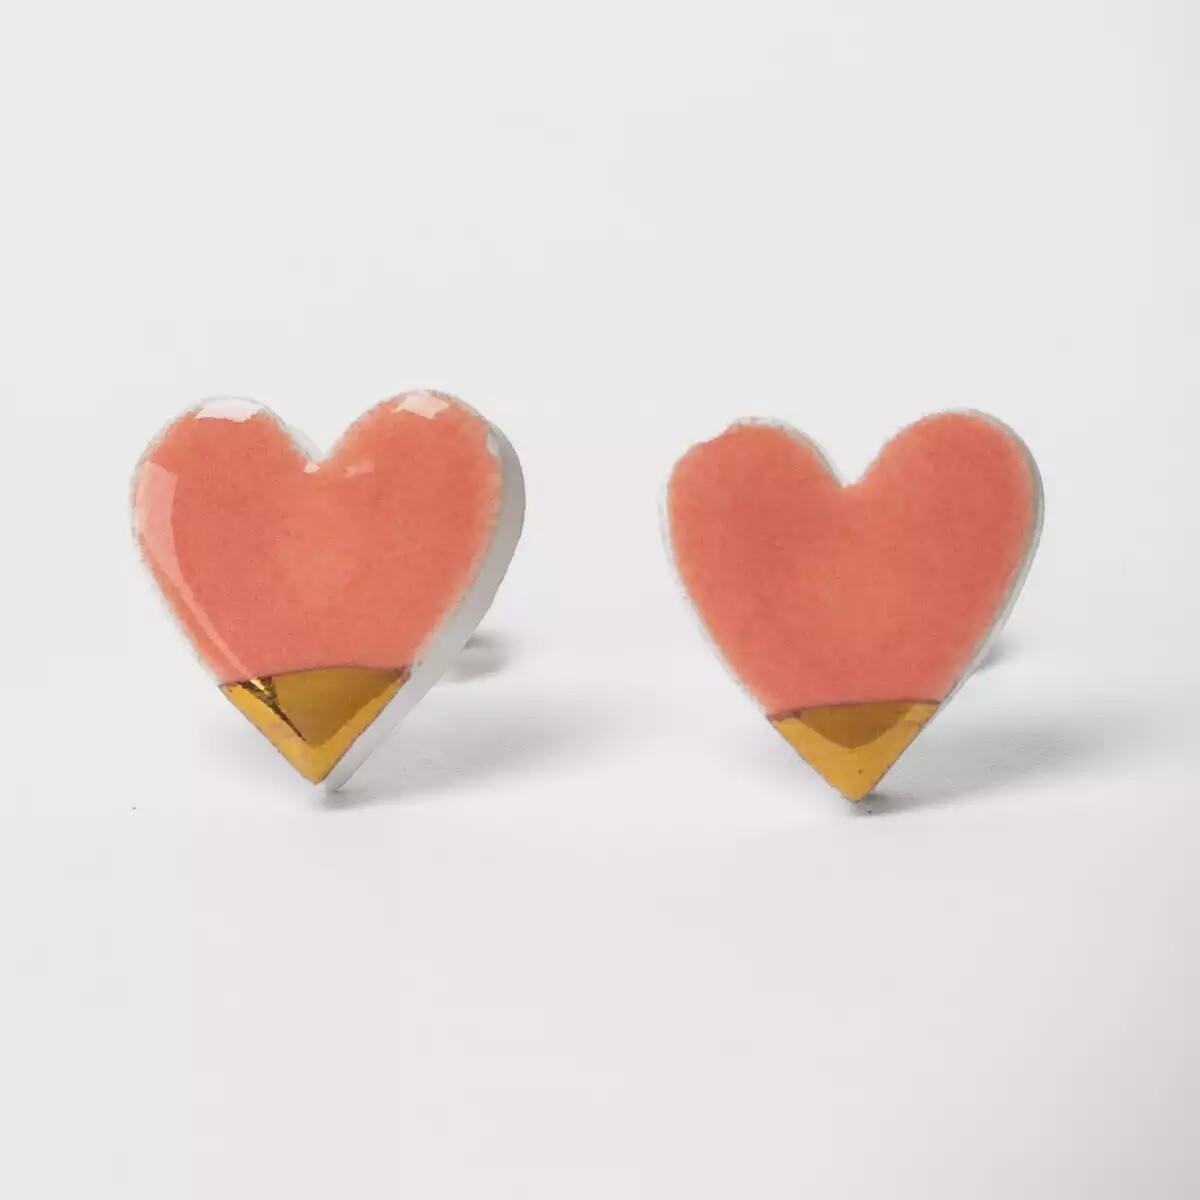 Ceramic Heart Stud Earrings - Peachy Pink by Clay Blanca